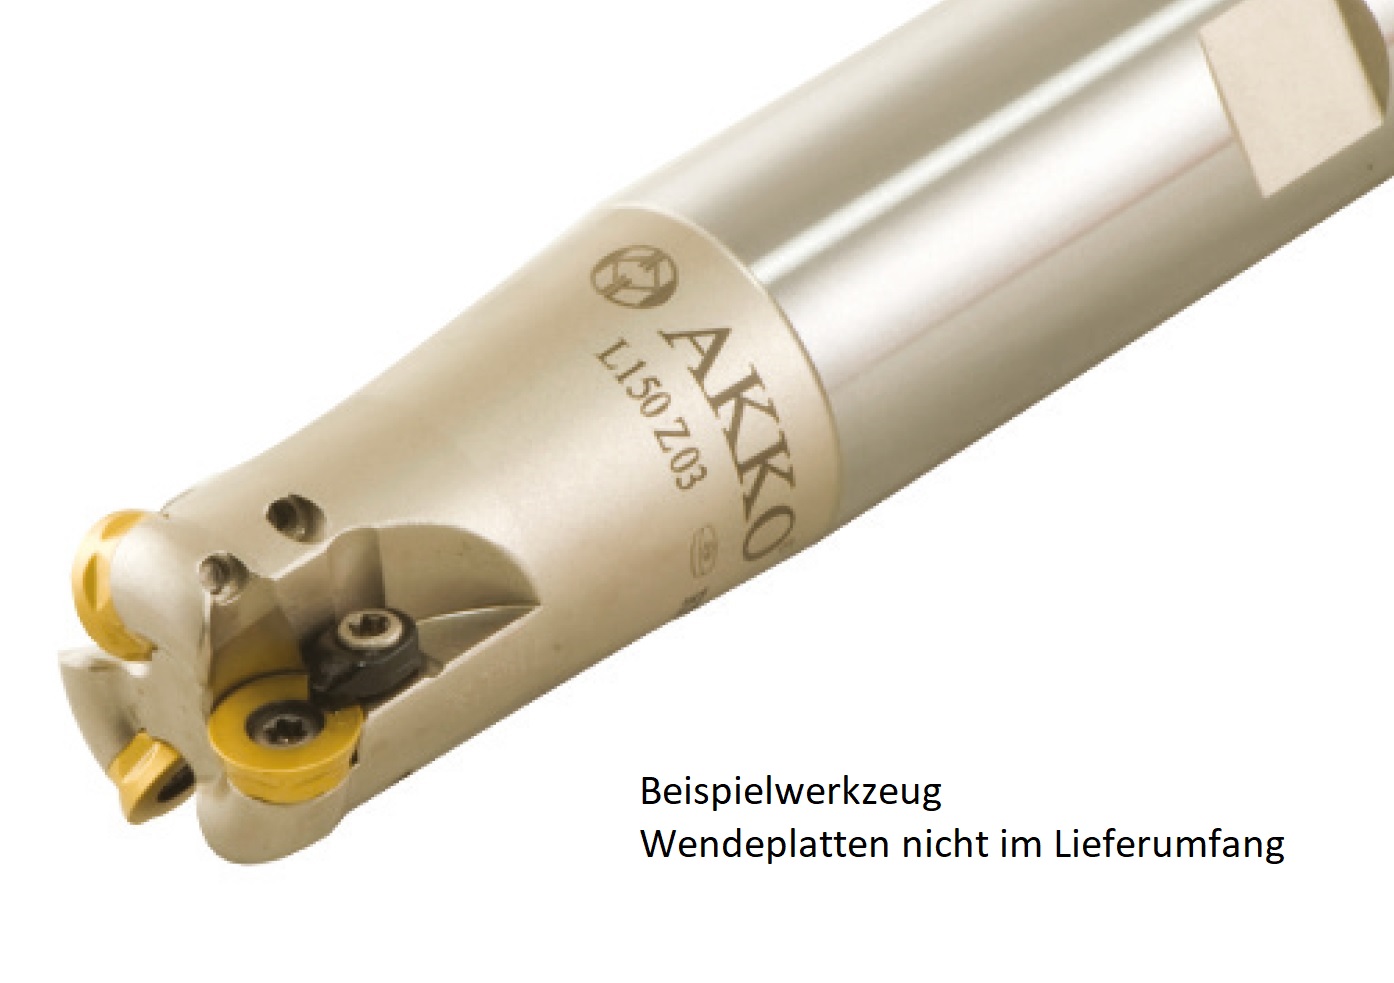 AKKO-Hochvorschub-Schaftfräser ø 32 mm für Wendeplatten, kompatibel mit ISO RD.. 1204
Schaft-ø 32, ohne Innenkühlung, Z=3